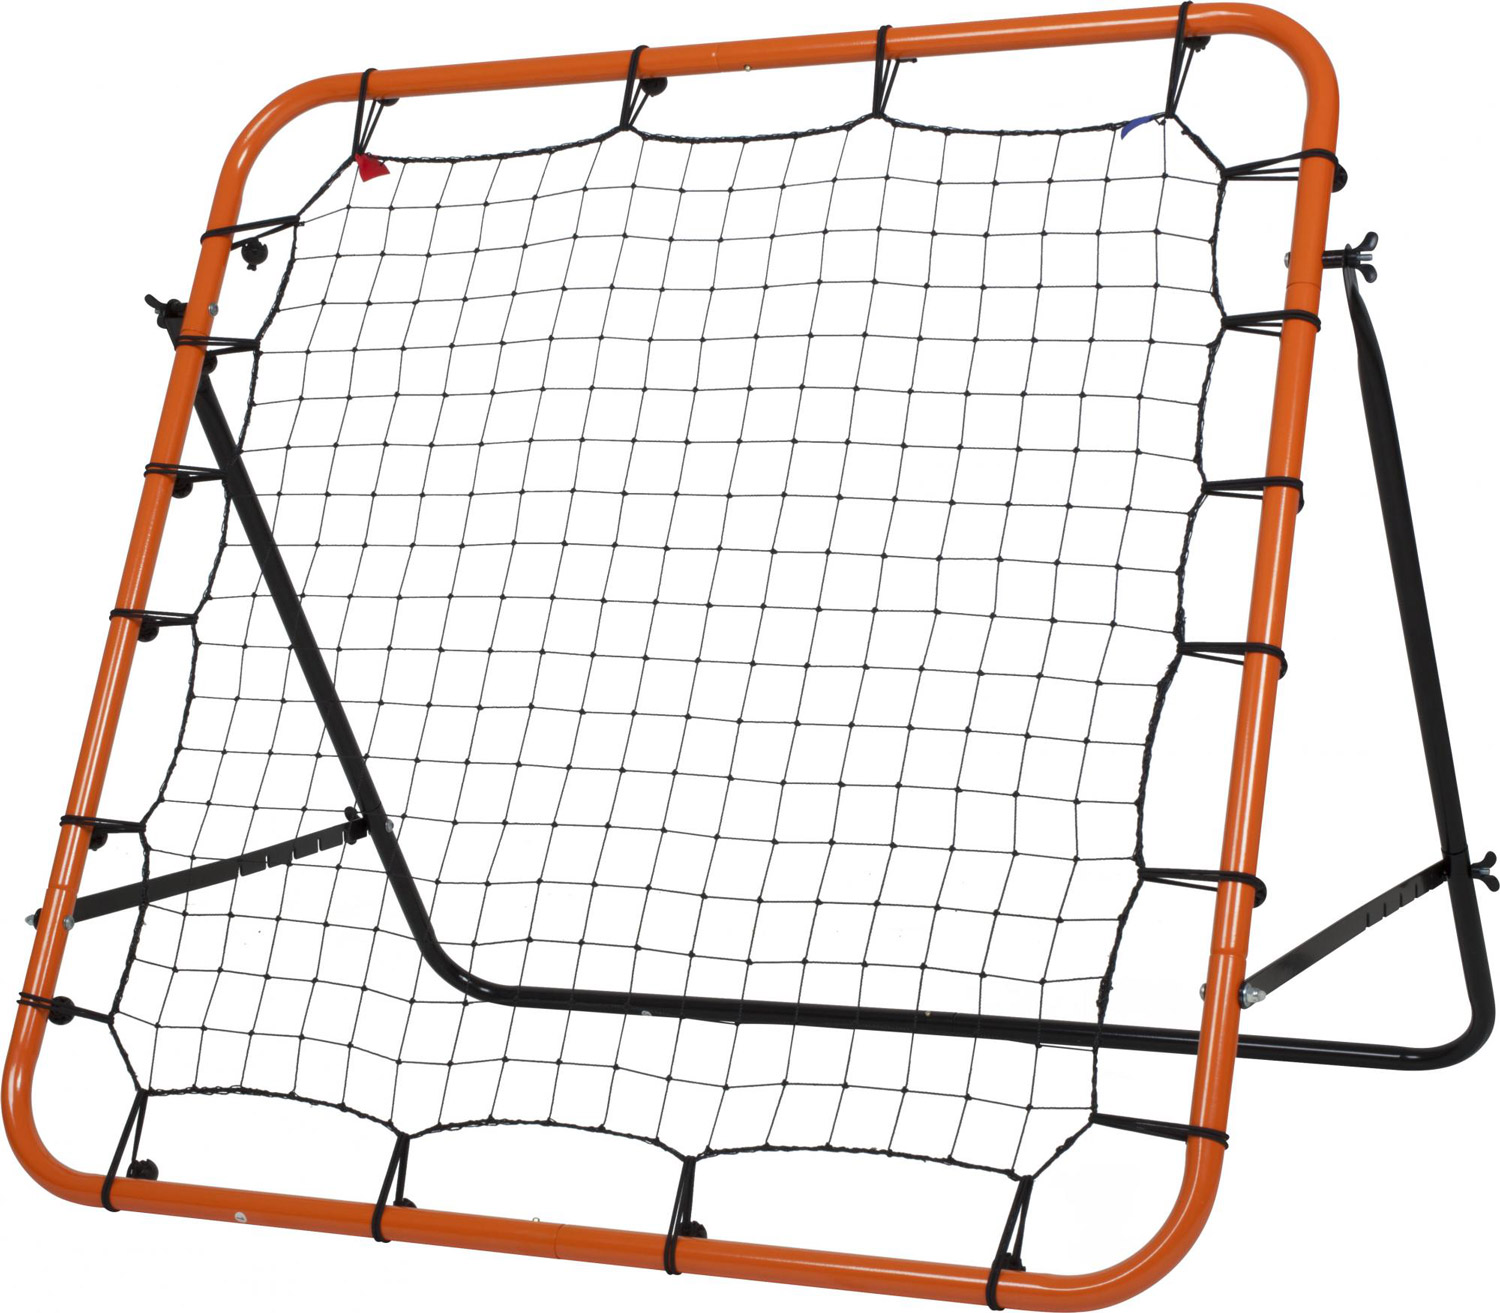 Rebounder net